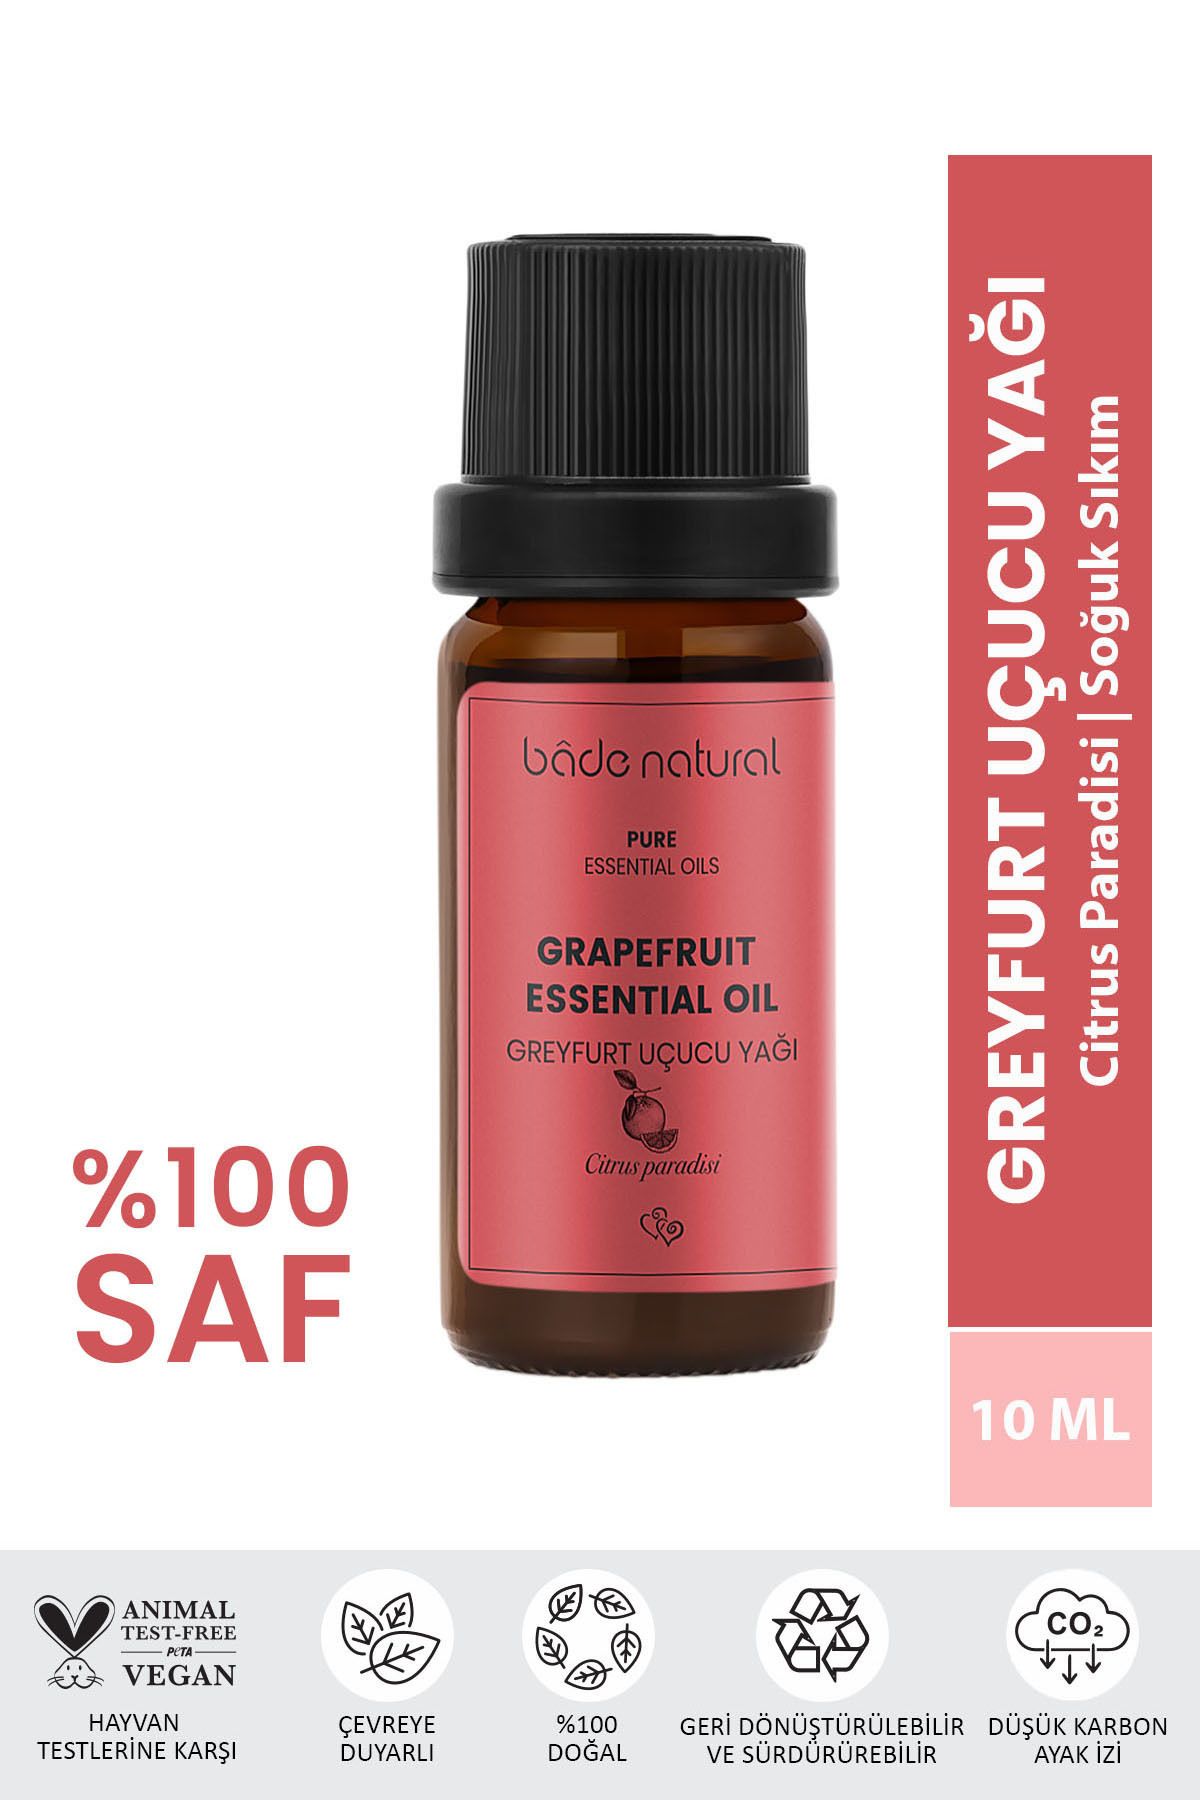 Bade Natural Greyfurt Uçucu Yağı %100 Saf 10 ml